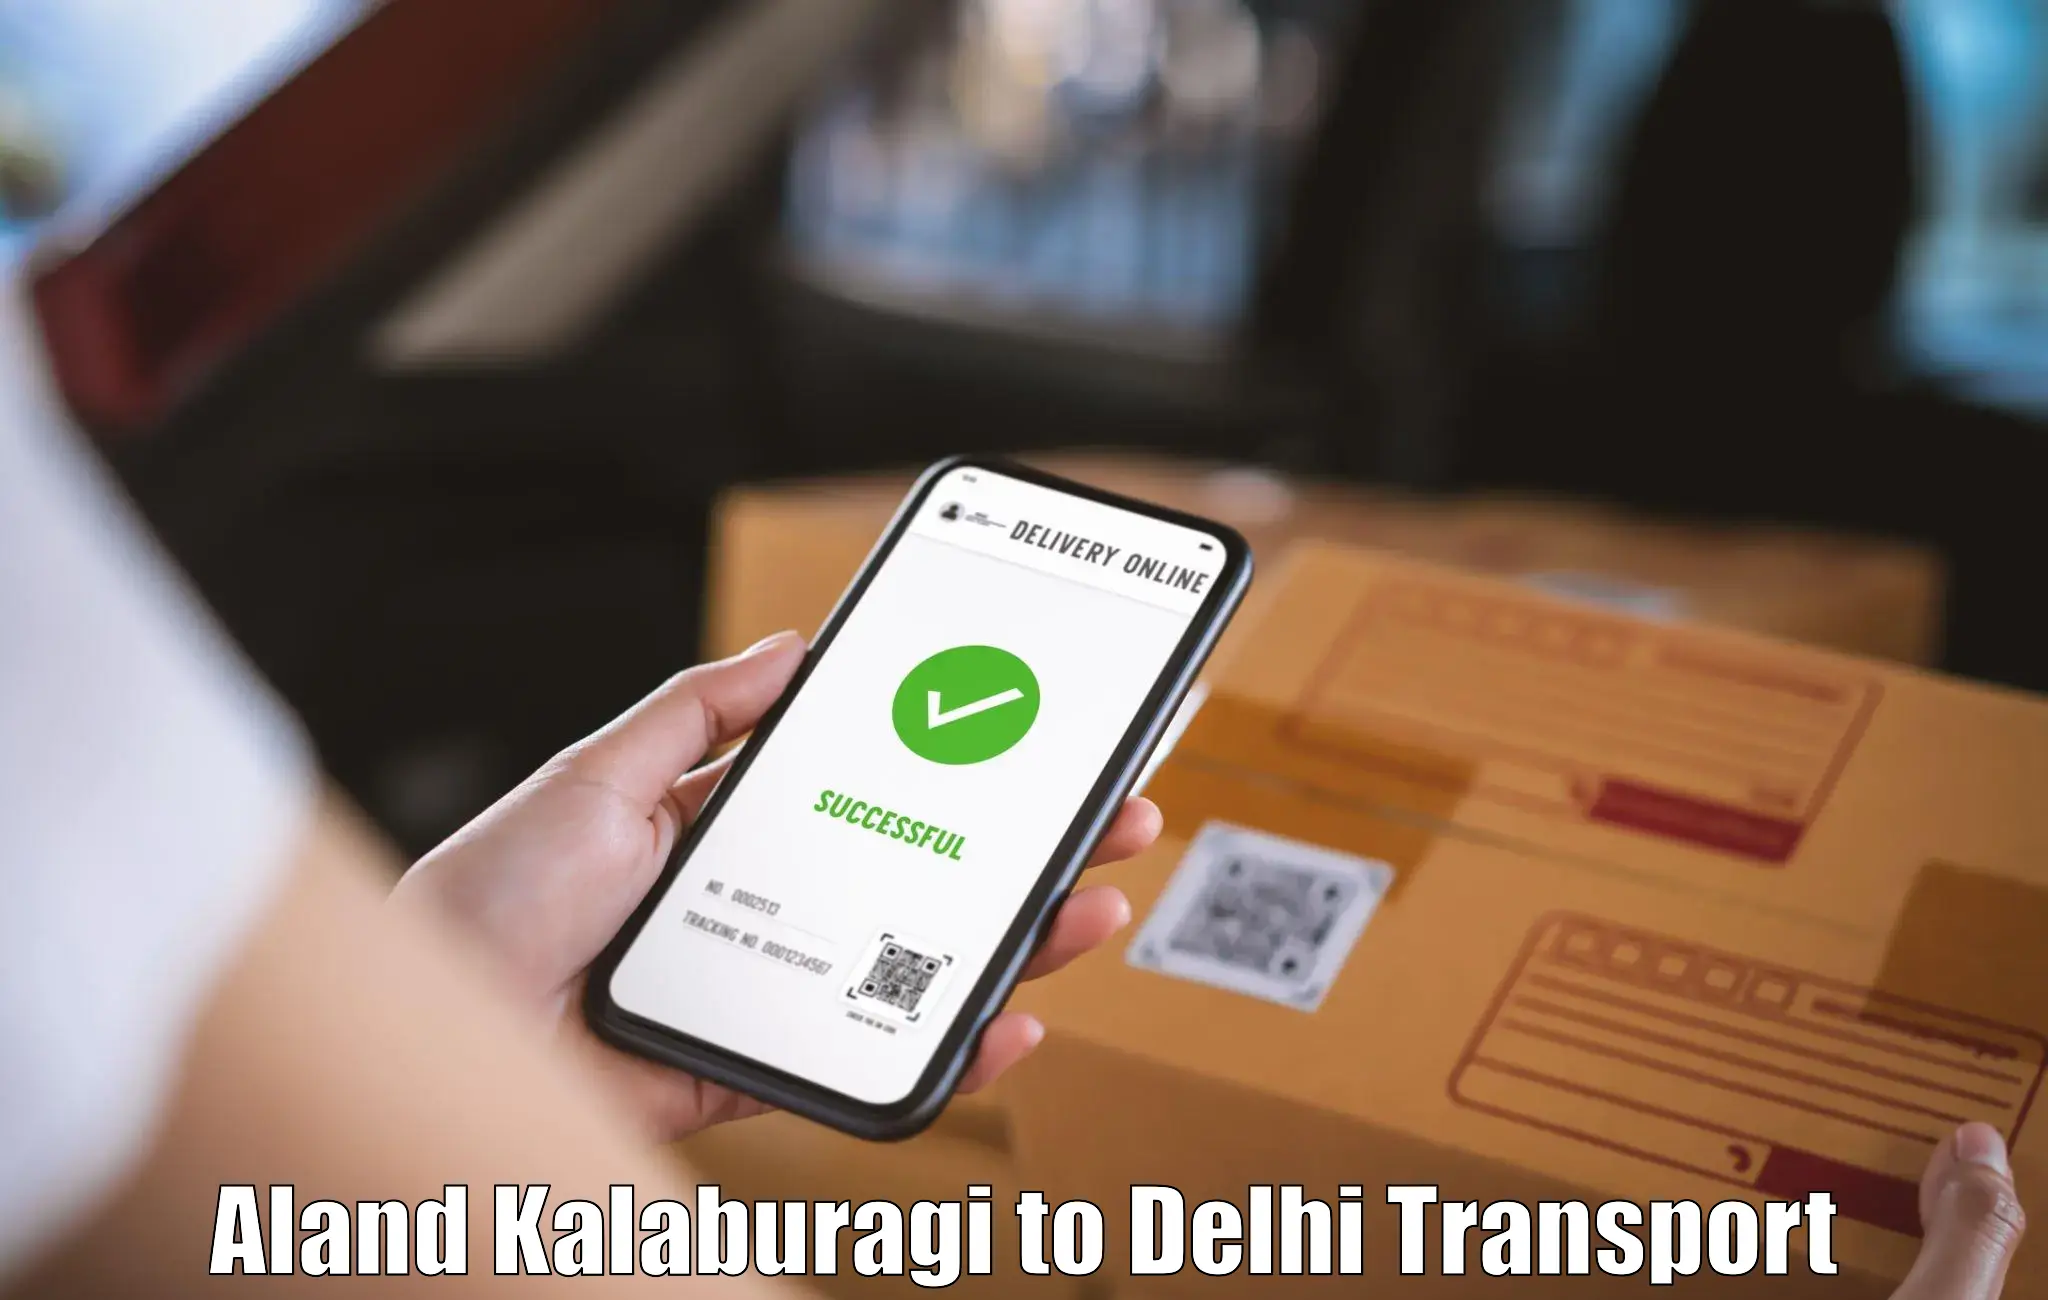 Shipping partner Aland Kalaburagi to Jamia Hamdard New Delhi